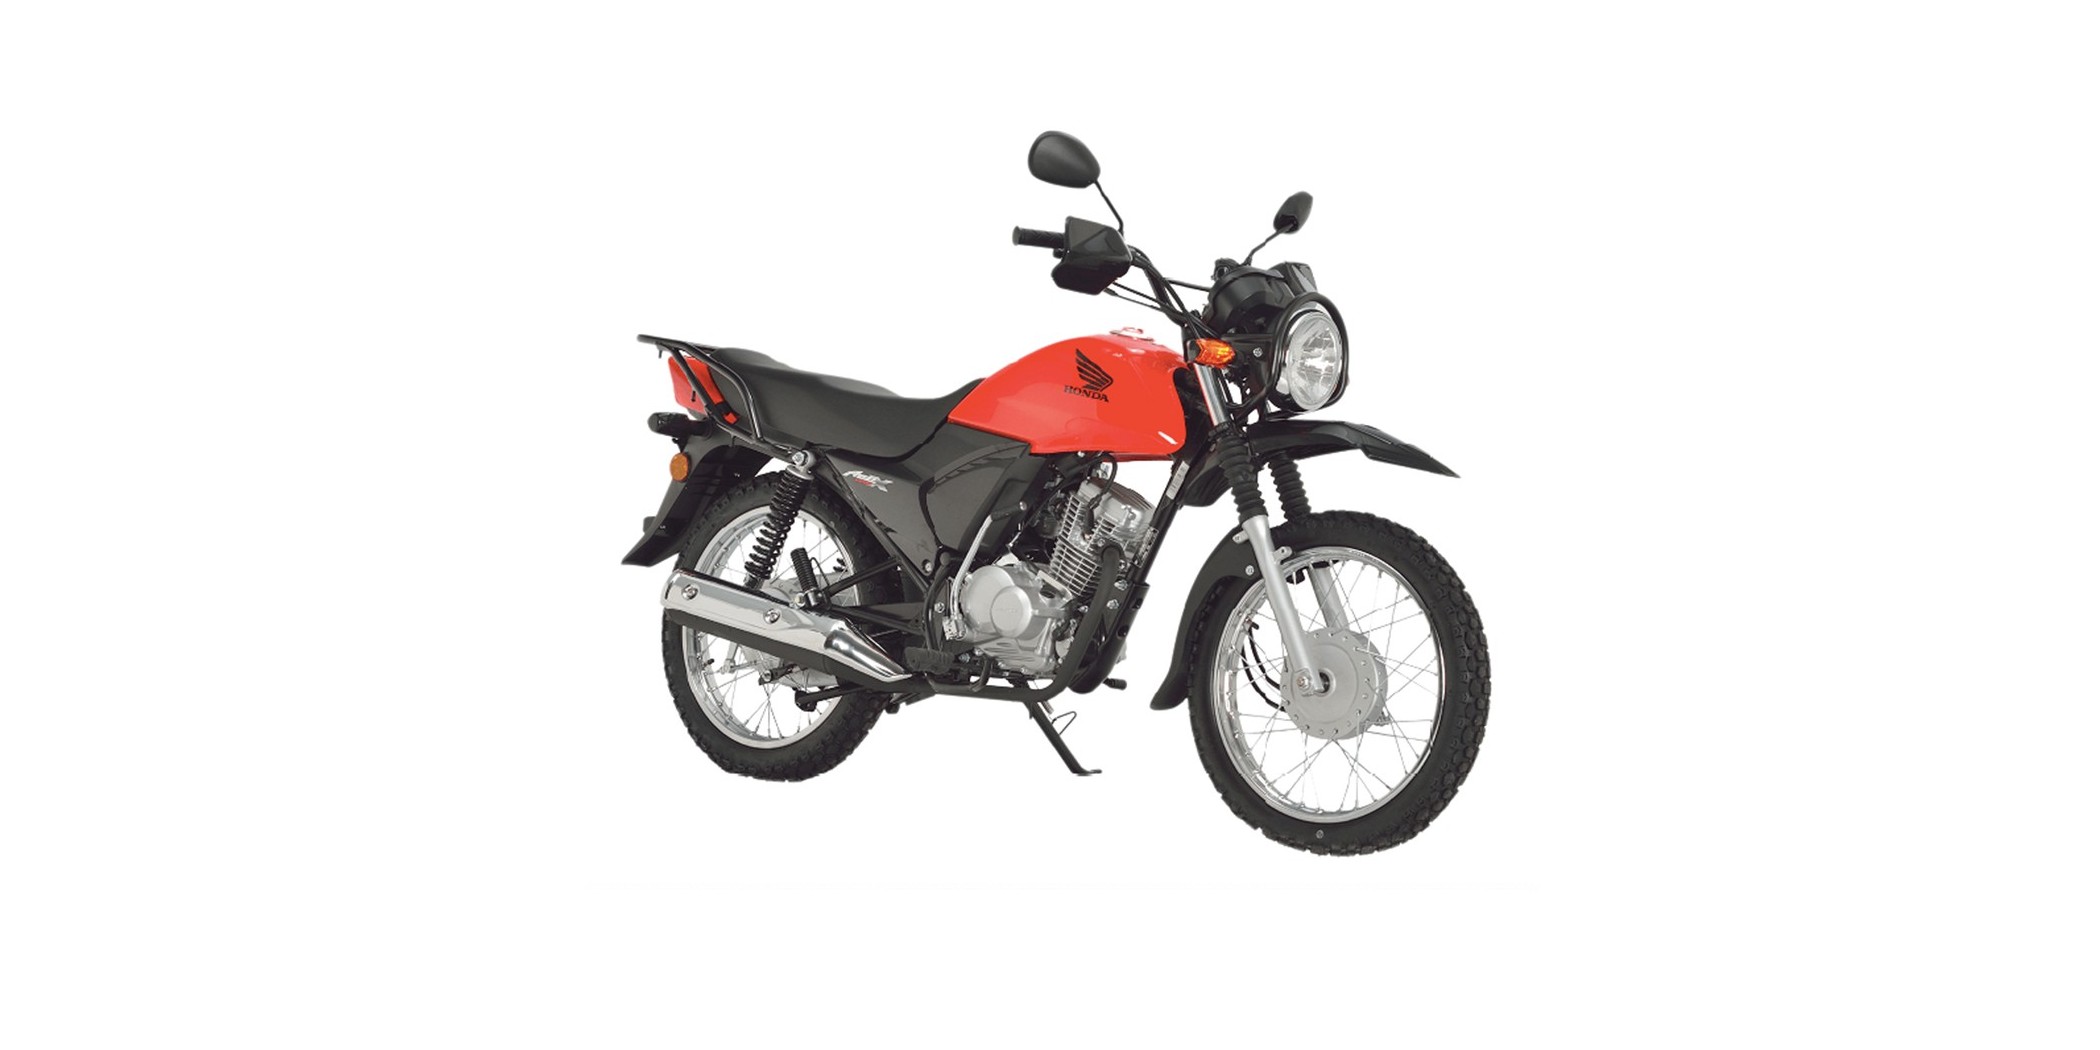 Honda CGX125 Red 124cc Motorbike